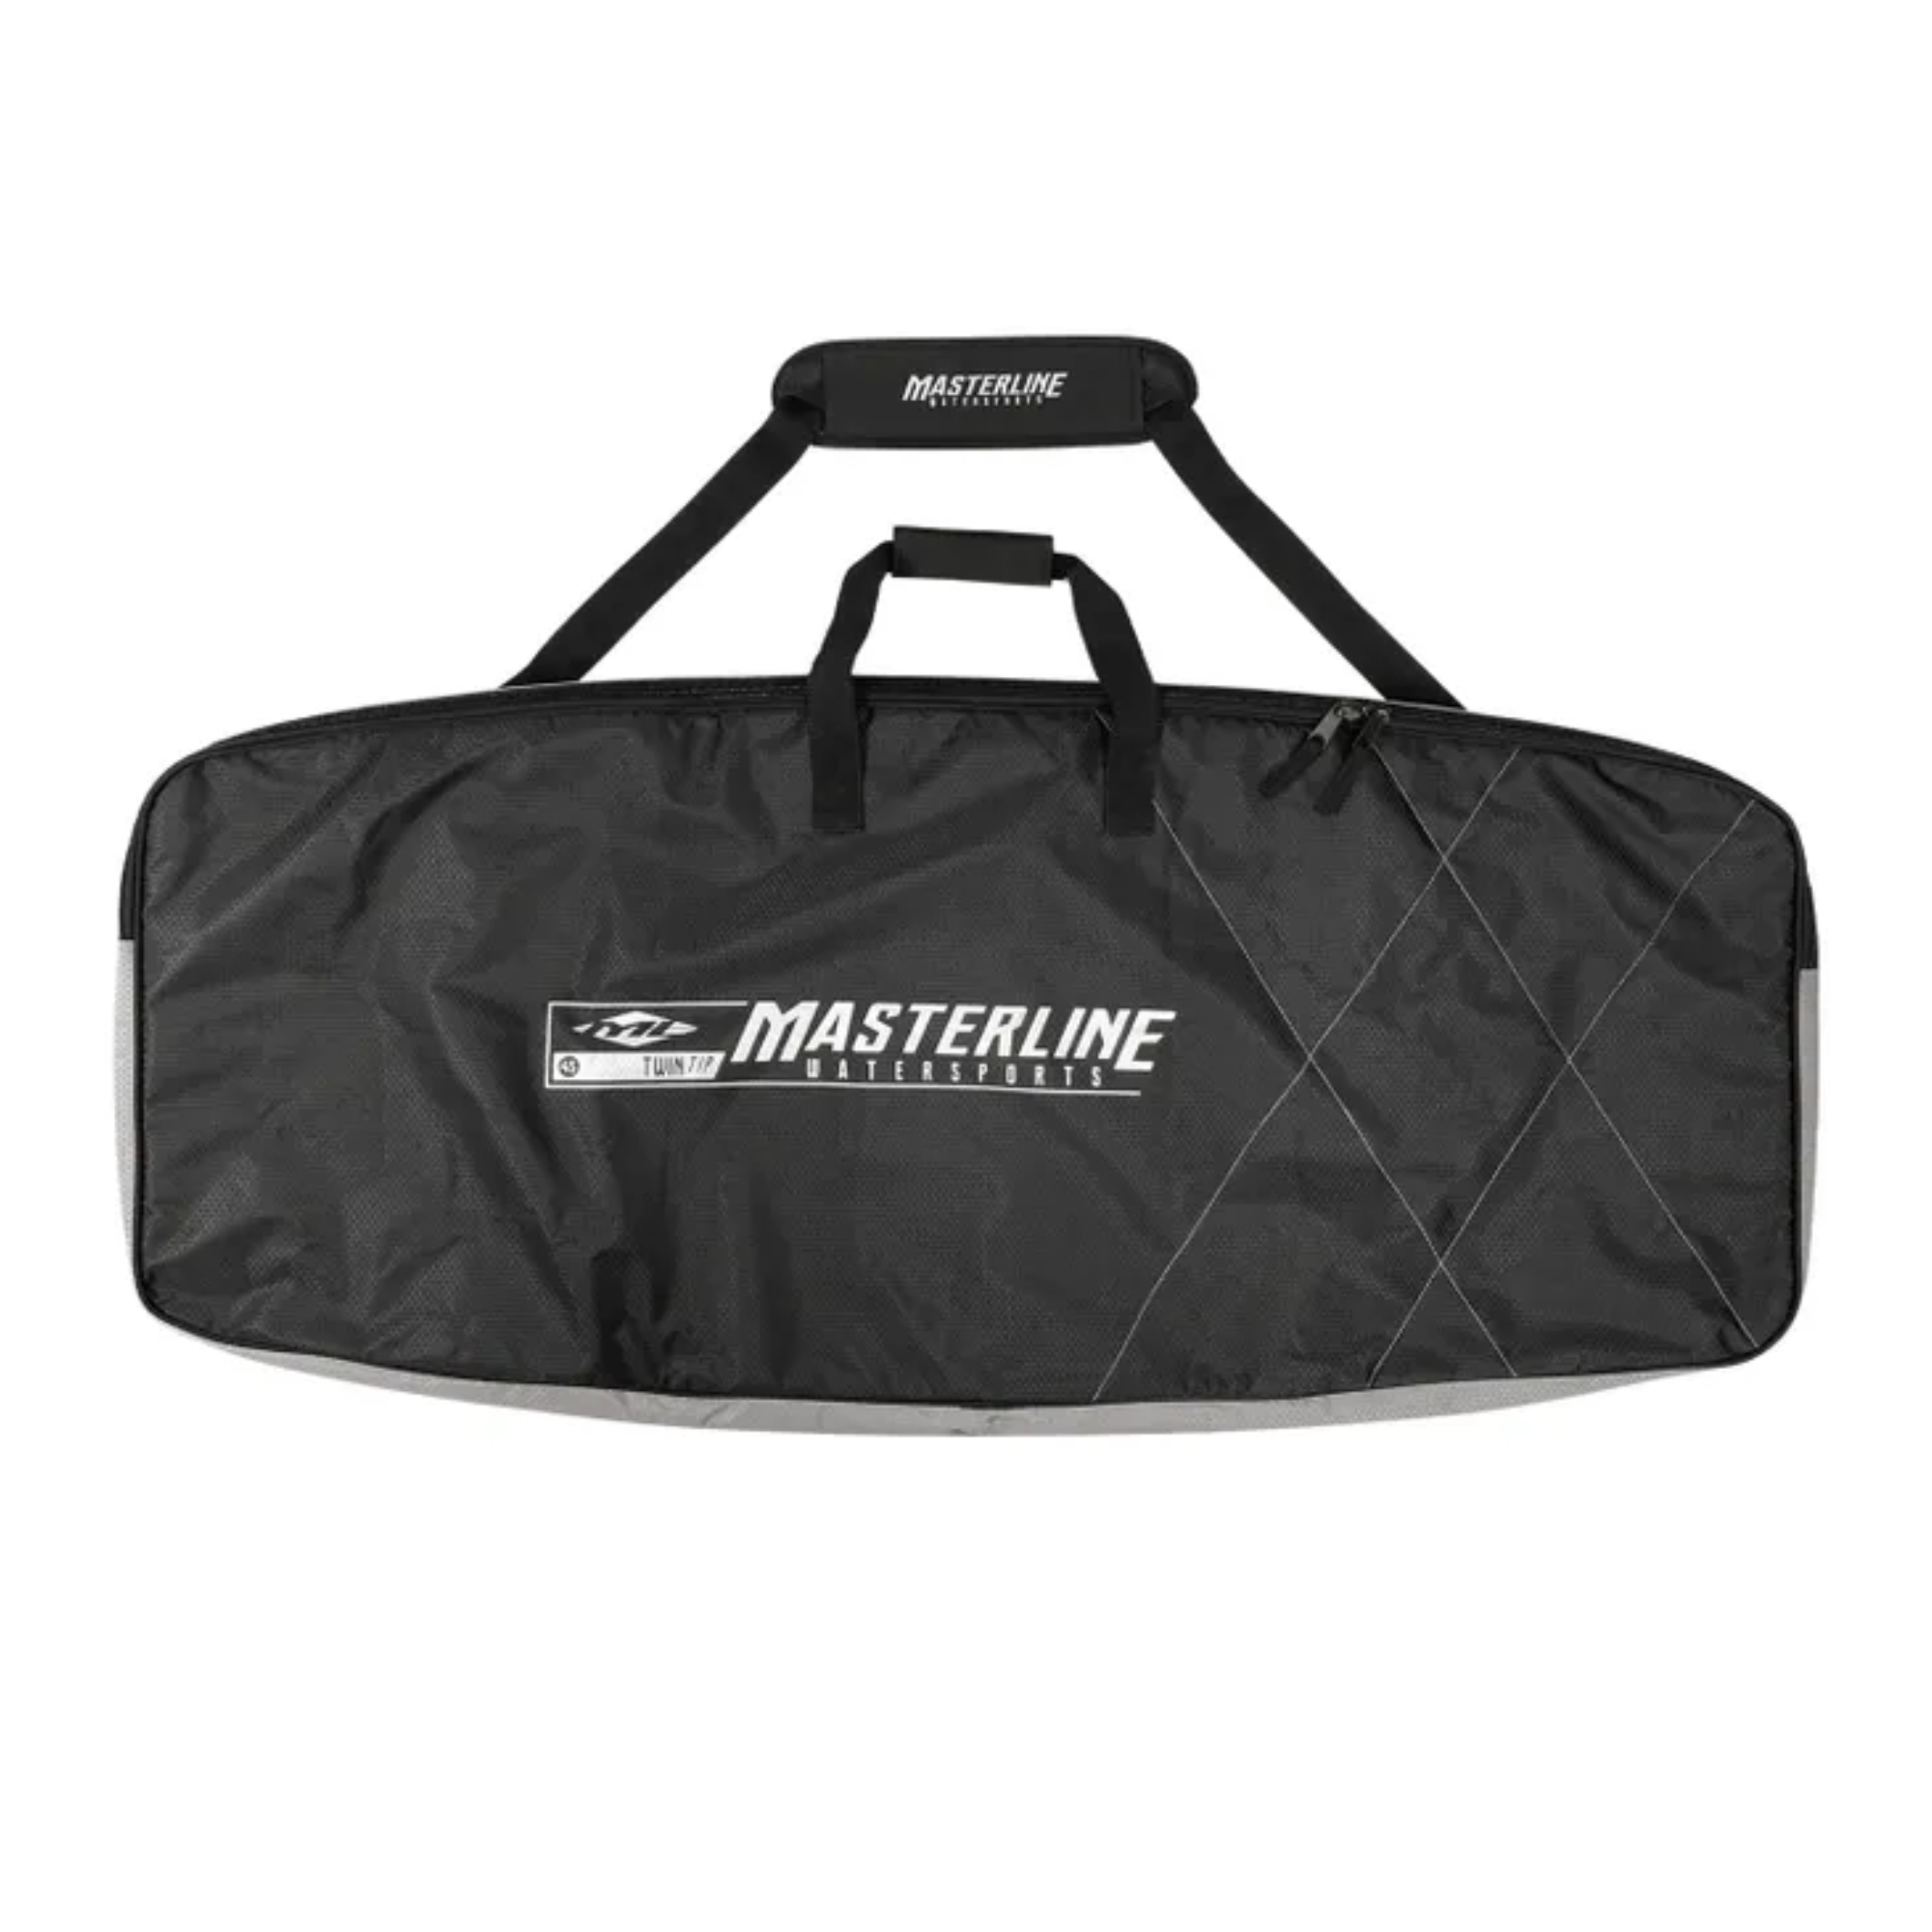 Masterline Deluxe Wakeskate Bag